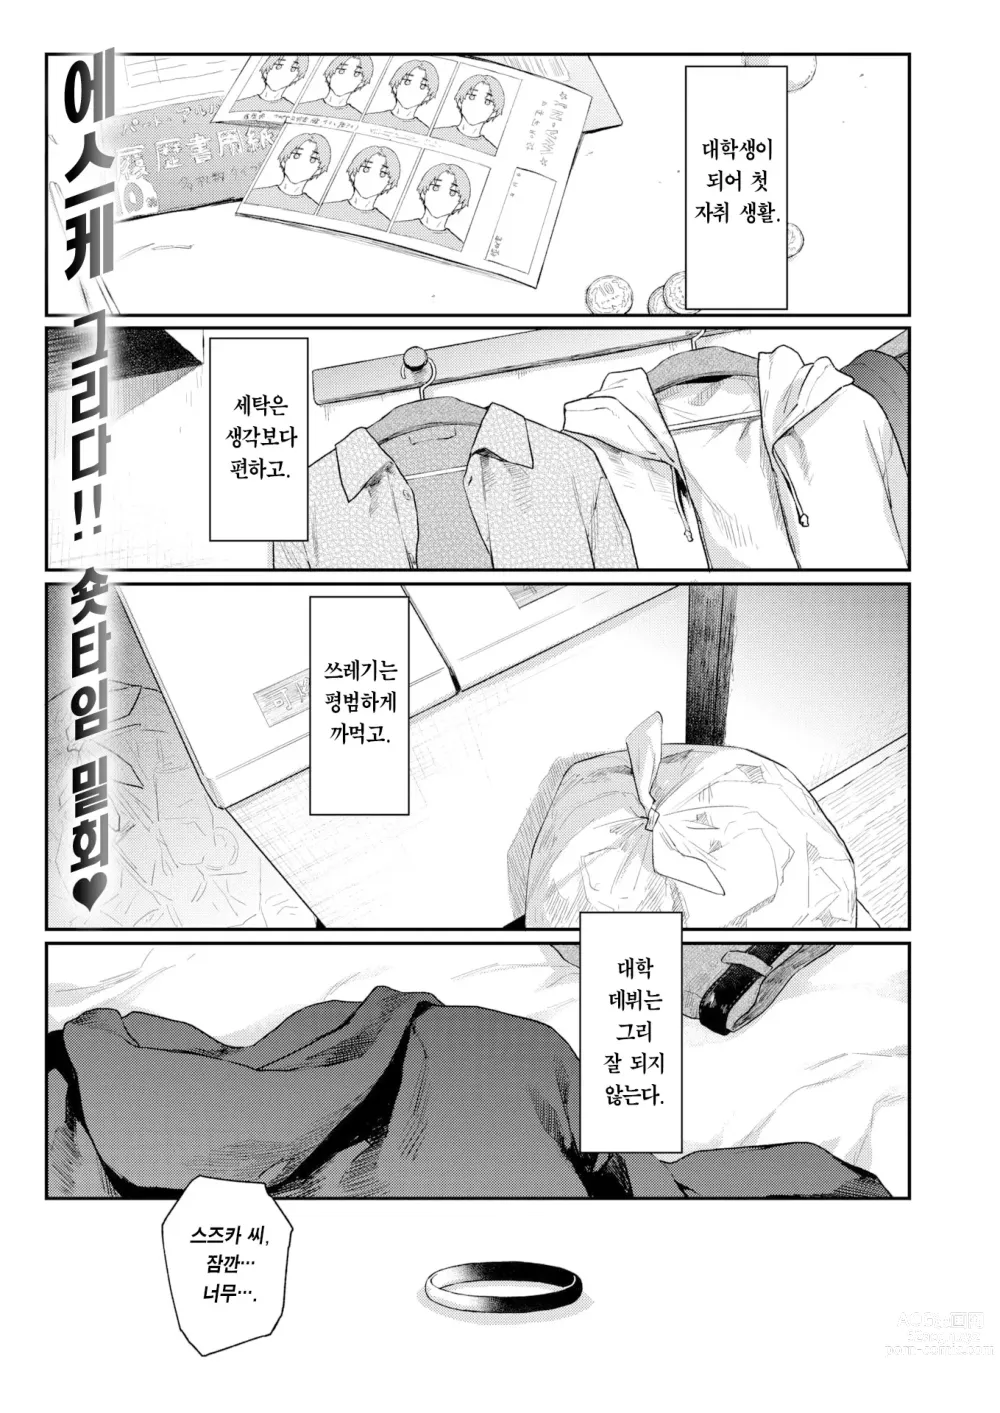 Page 2 of manga 샛길